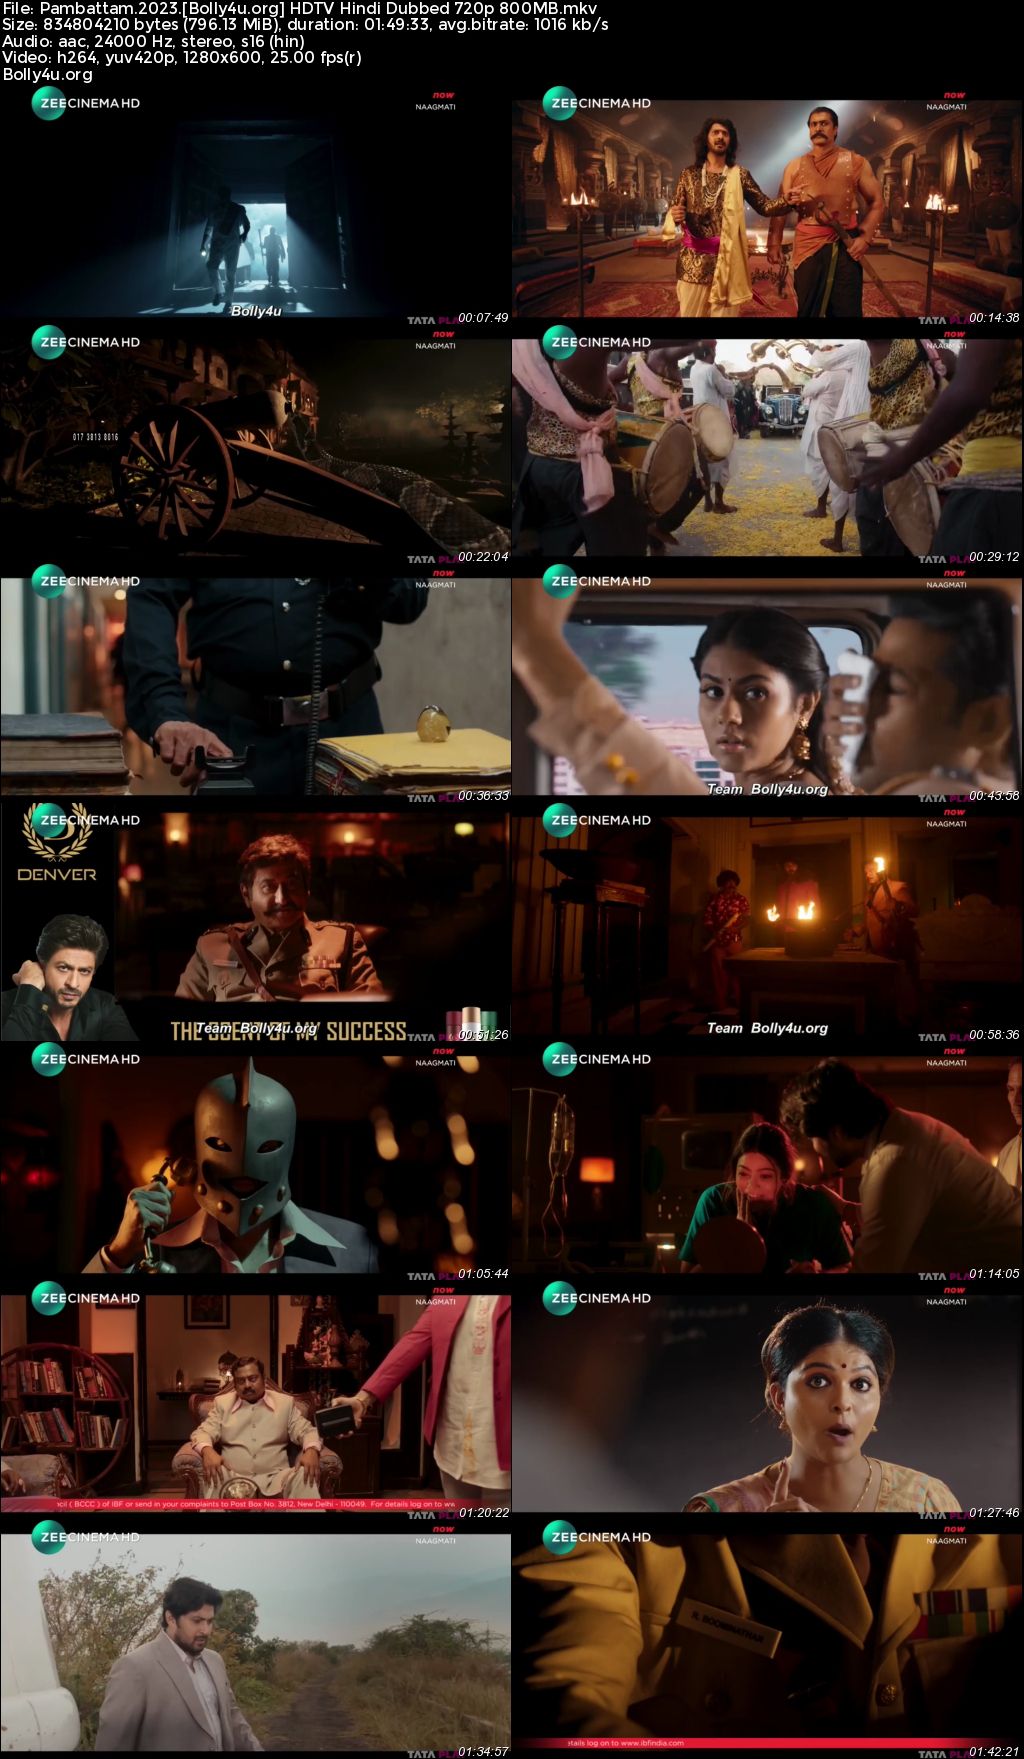 Pambattam 2023 HDTV Hindi Dubbed Full Movie Download 1080p 720p 480p